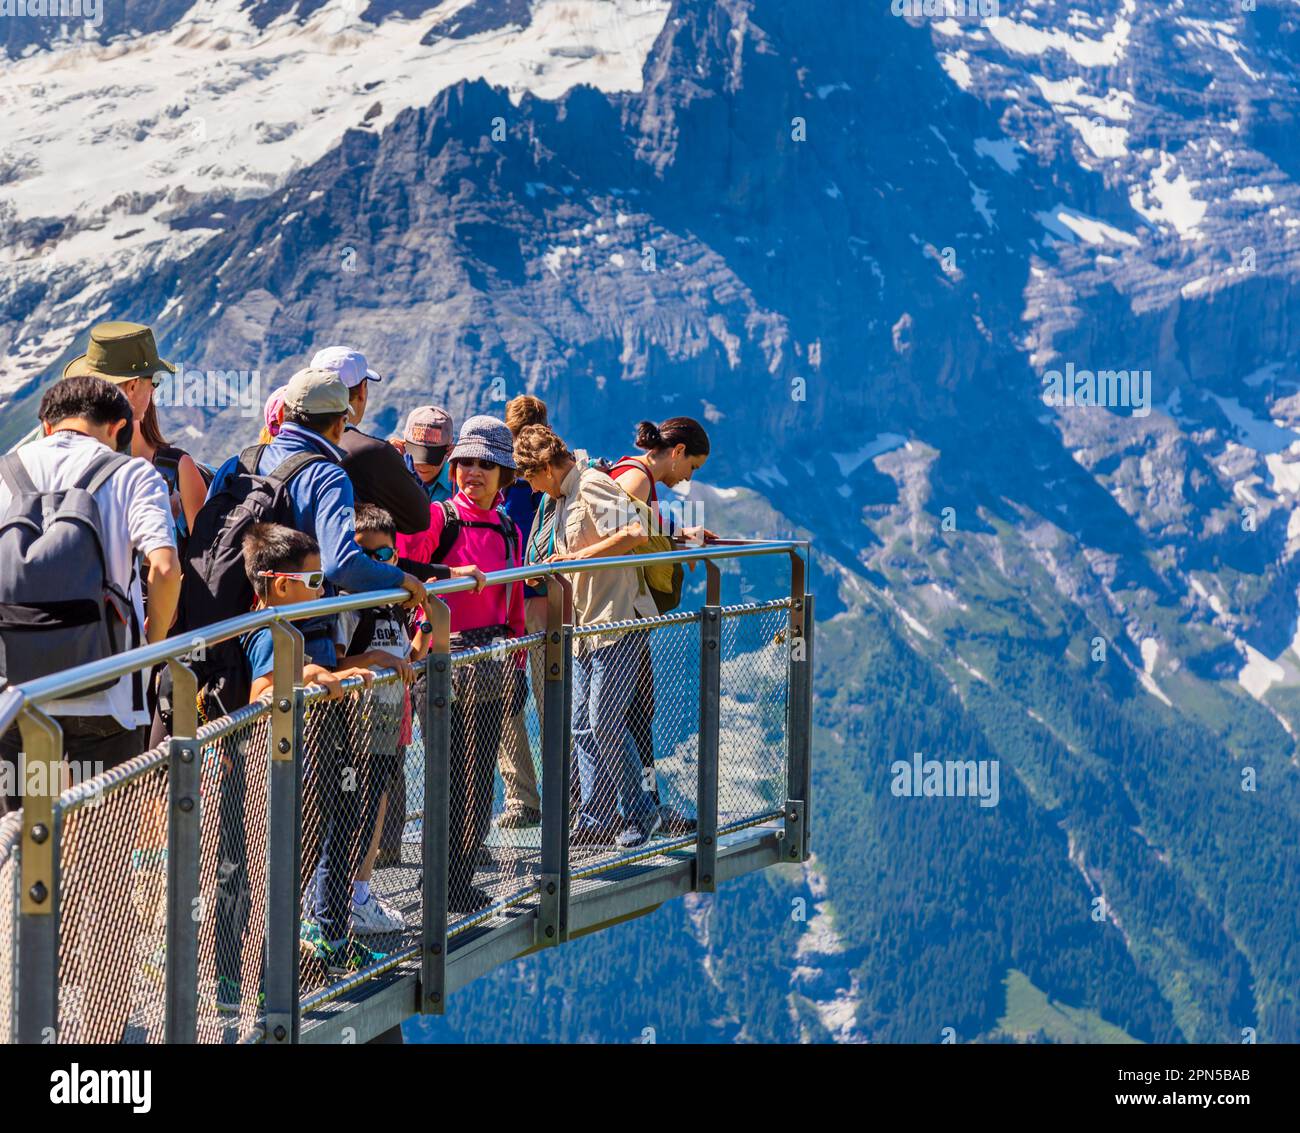 First Cliff Walk Walk, una piattaforma panoramica aerea a Grindelwald-First, regione di Jungfrau, Oberland Bernese, Svizzera con vista su Eiger Foto Stock